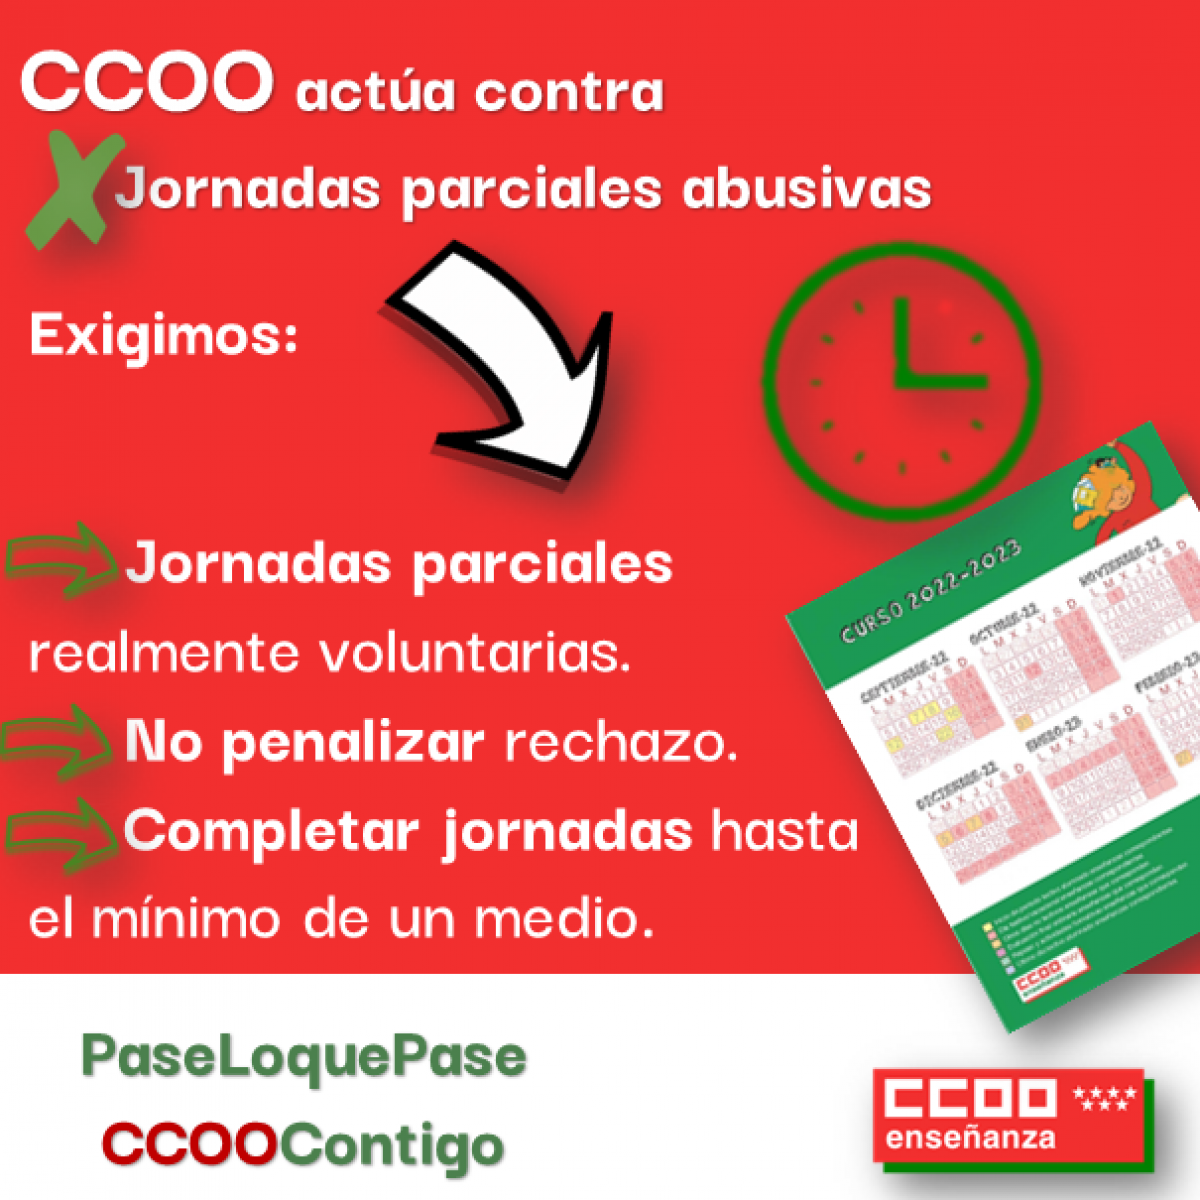 CCOO actúa contra las jornadas parciales abusivas